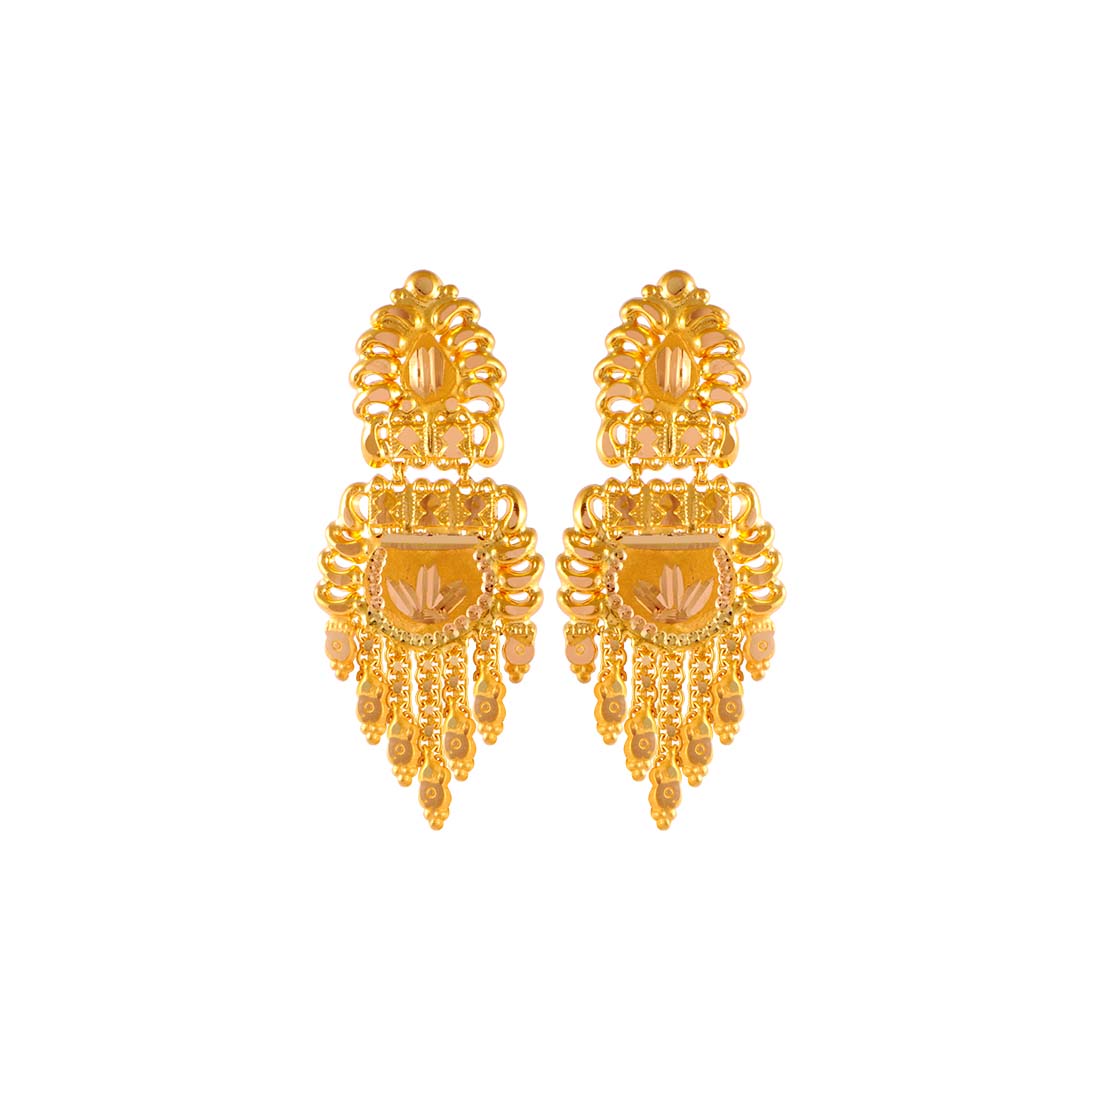 Buy New Model Peacock Design Multi Stone One Gram Gold Plated Stud Earrings